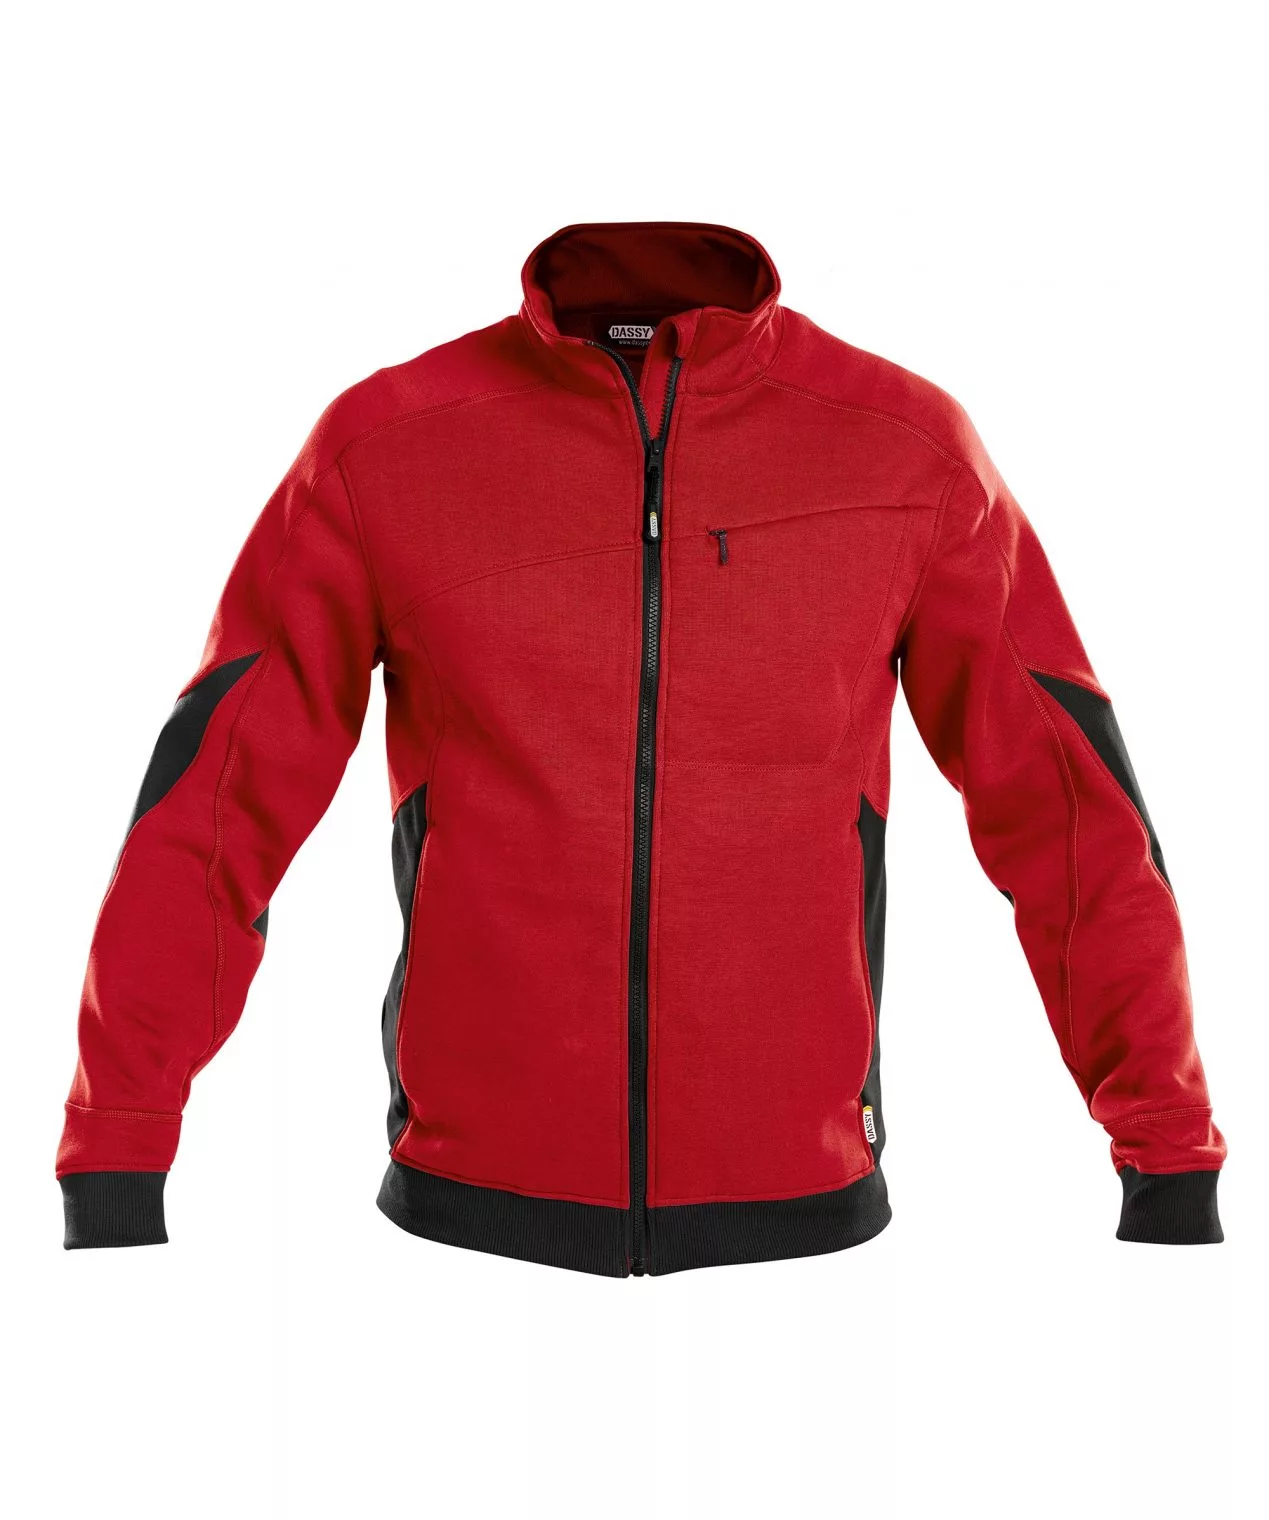 Dassy Velox: Sweatshirt Für Männer, Die Qualität Schätzen, Rot